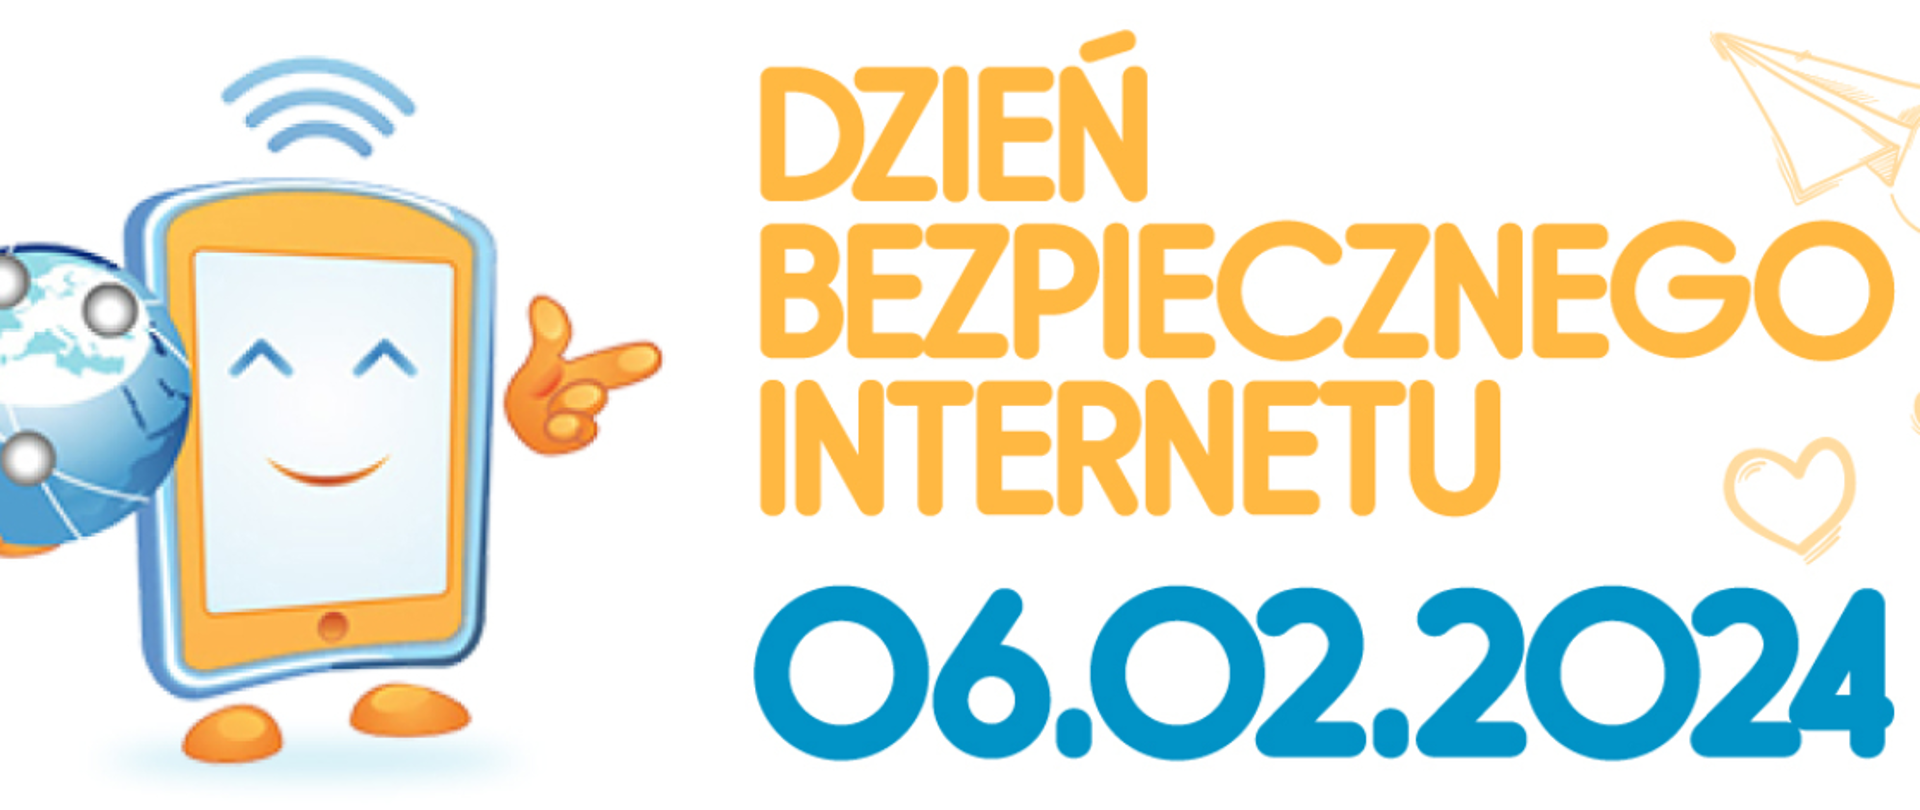 Plakat - na białym tle pomarańczowy i granatowy napis Dzień bezpiecznego internetu 06.02.2024. 